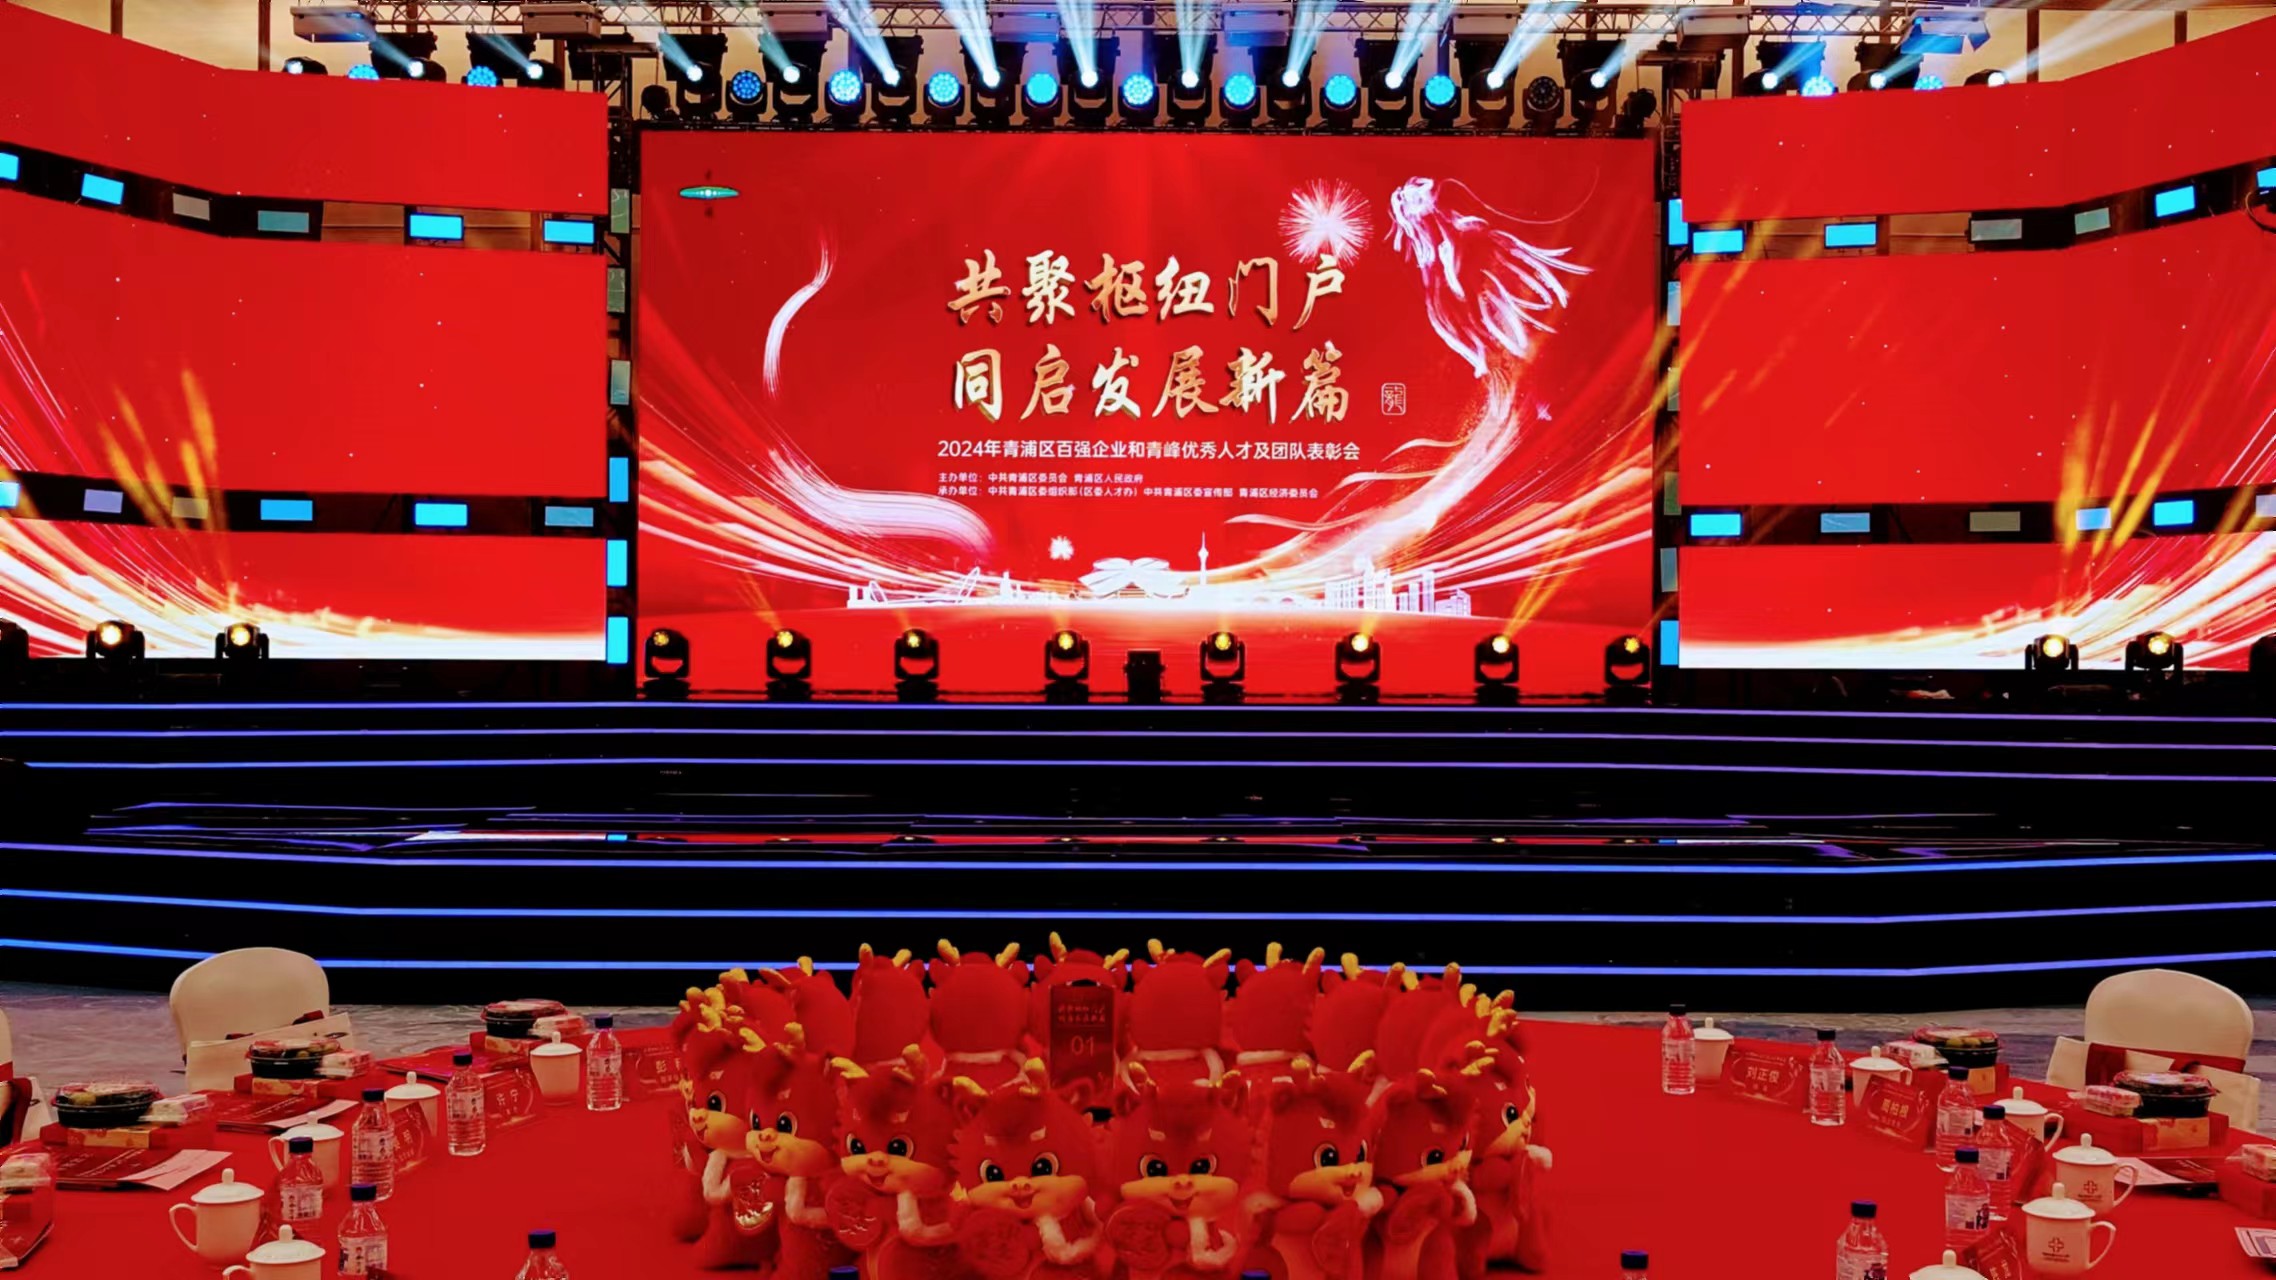 「青峰」政策再升級 滬青浦打造人才強區